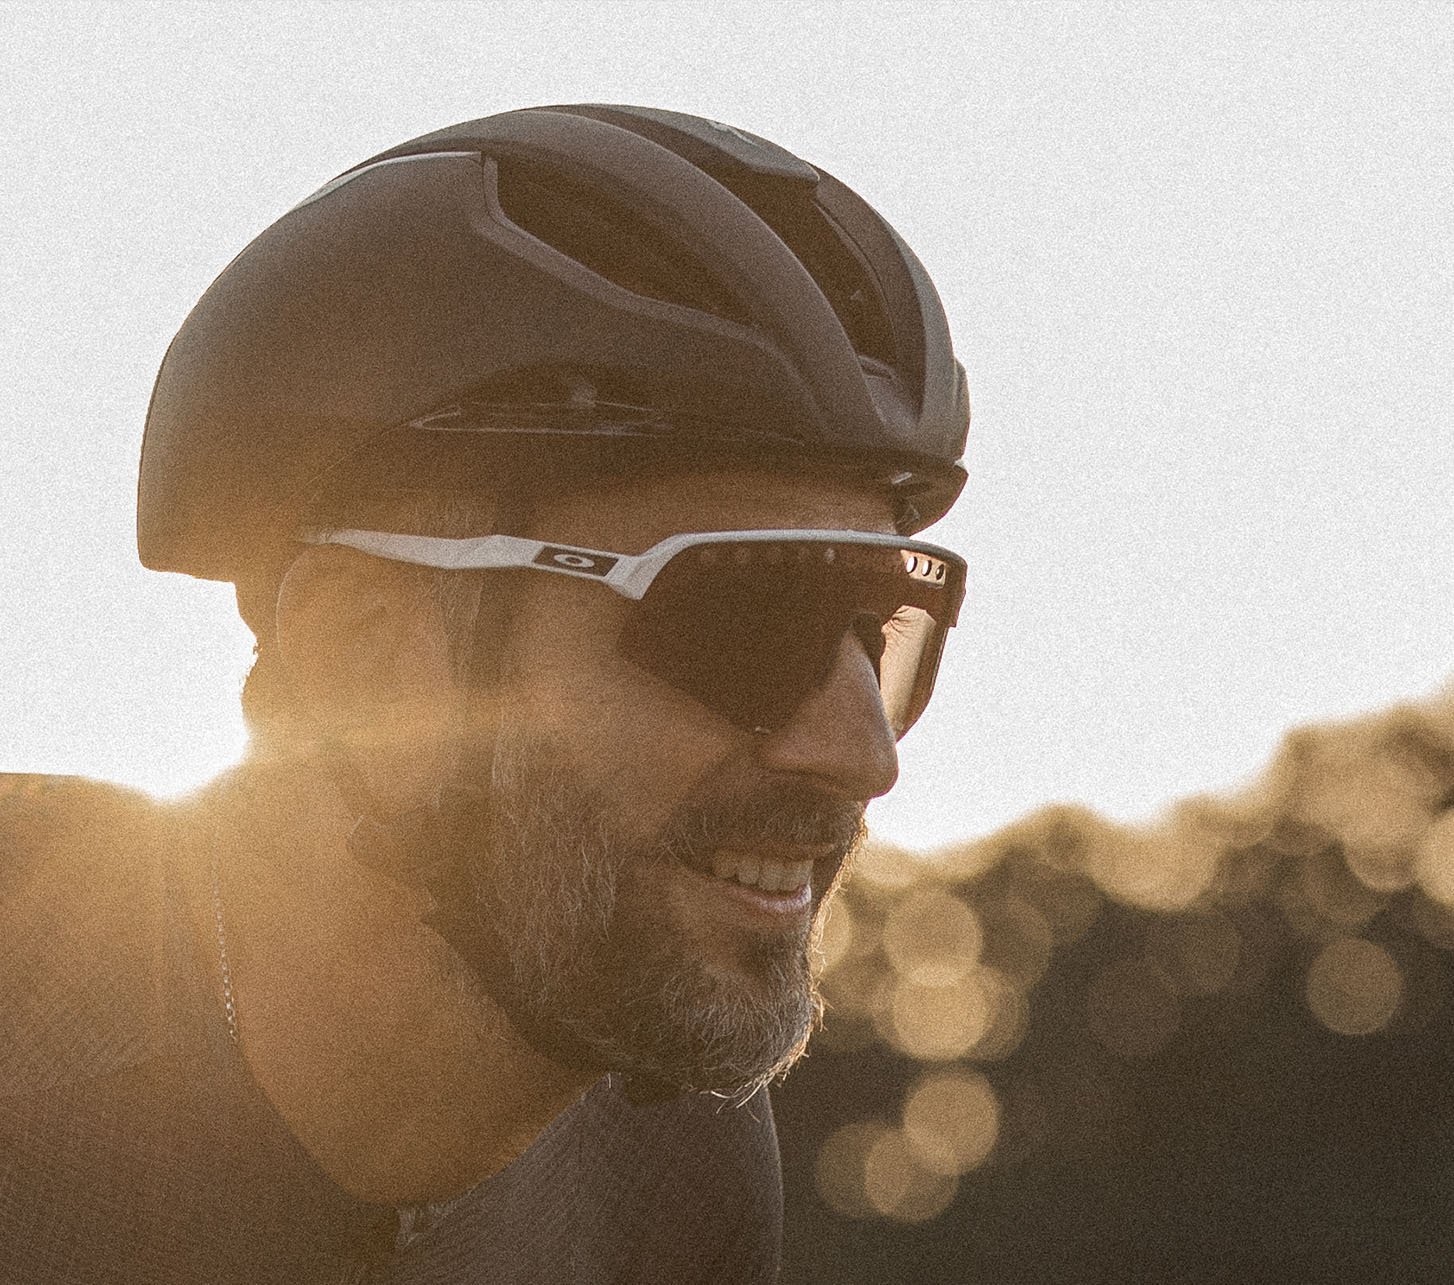 Rennradfahrer als Portraitbild mit Oakley Fahrradbrille in abendlicher Stimmung unterwegs.